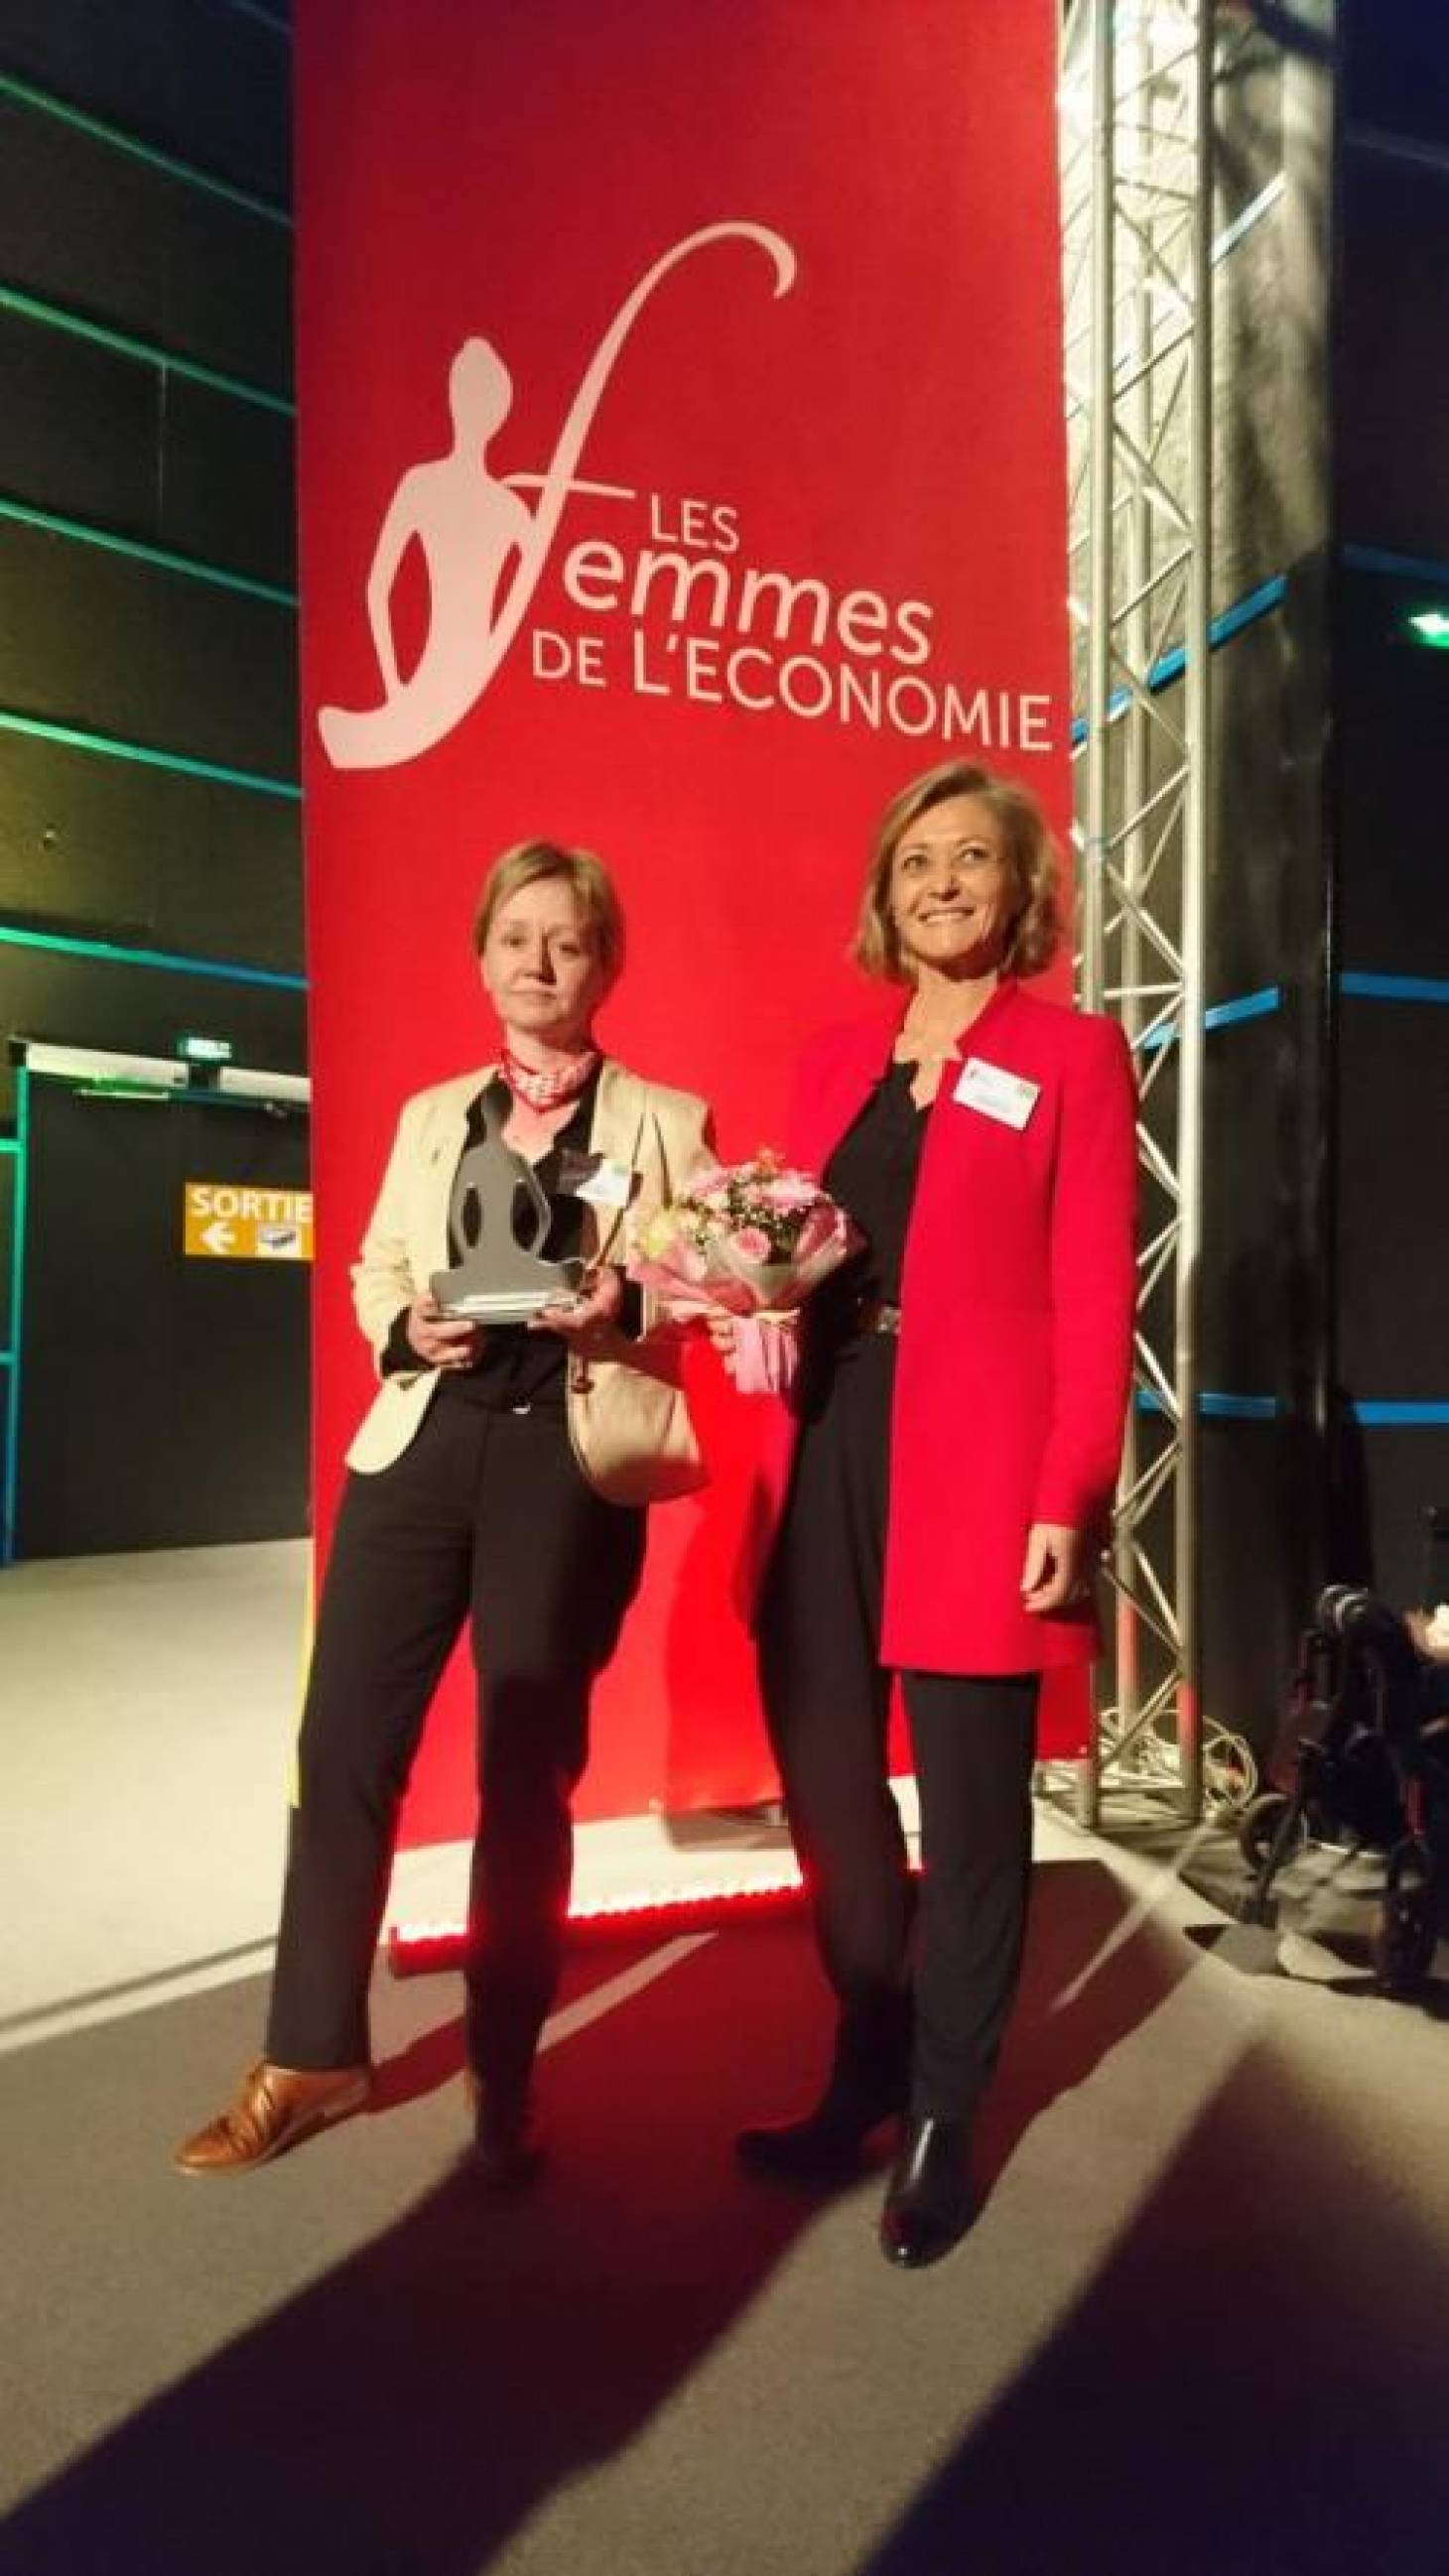 Femmes de l'économie - Sylvie Plumet reçoit le Trophée "Femme dirigeante"